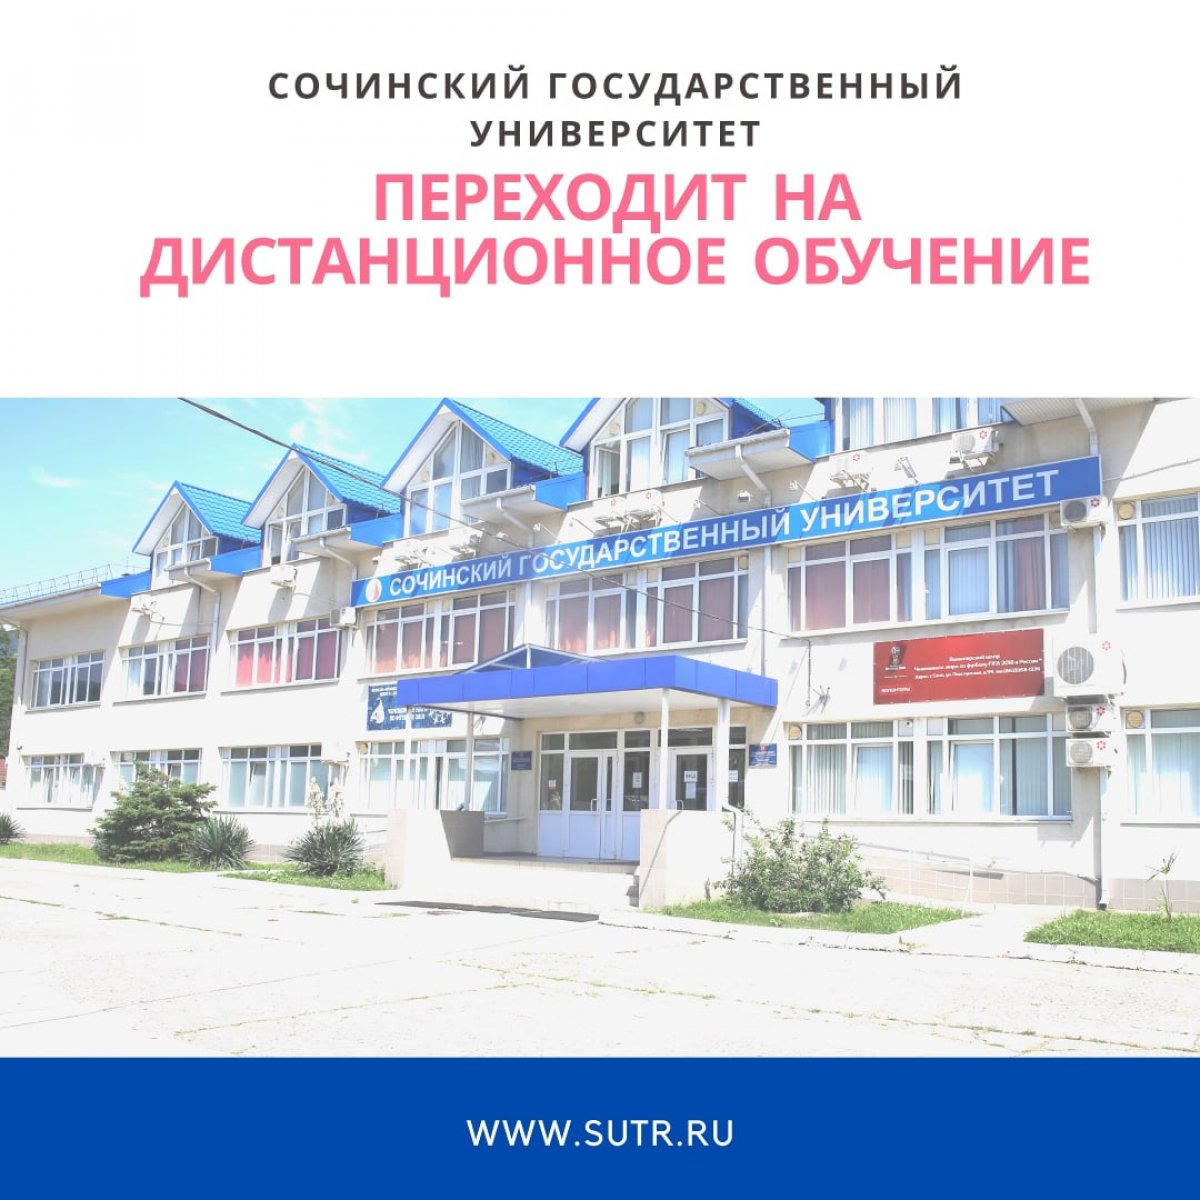 С 16 марта в Сочинском государственном университете введен режим дистанционного